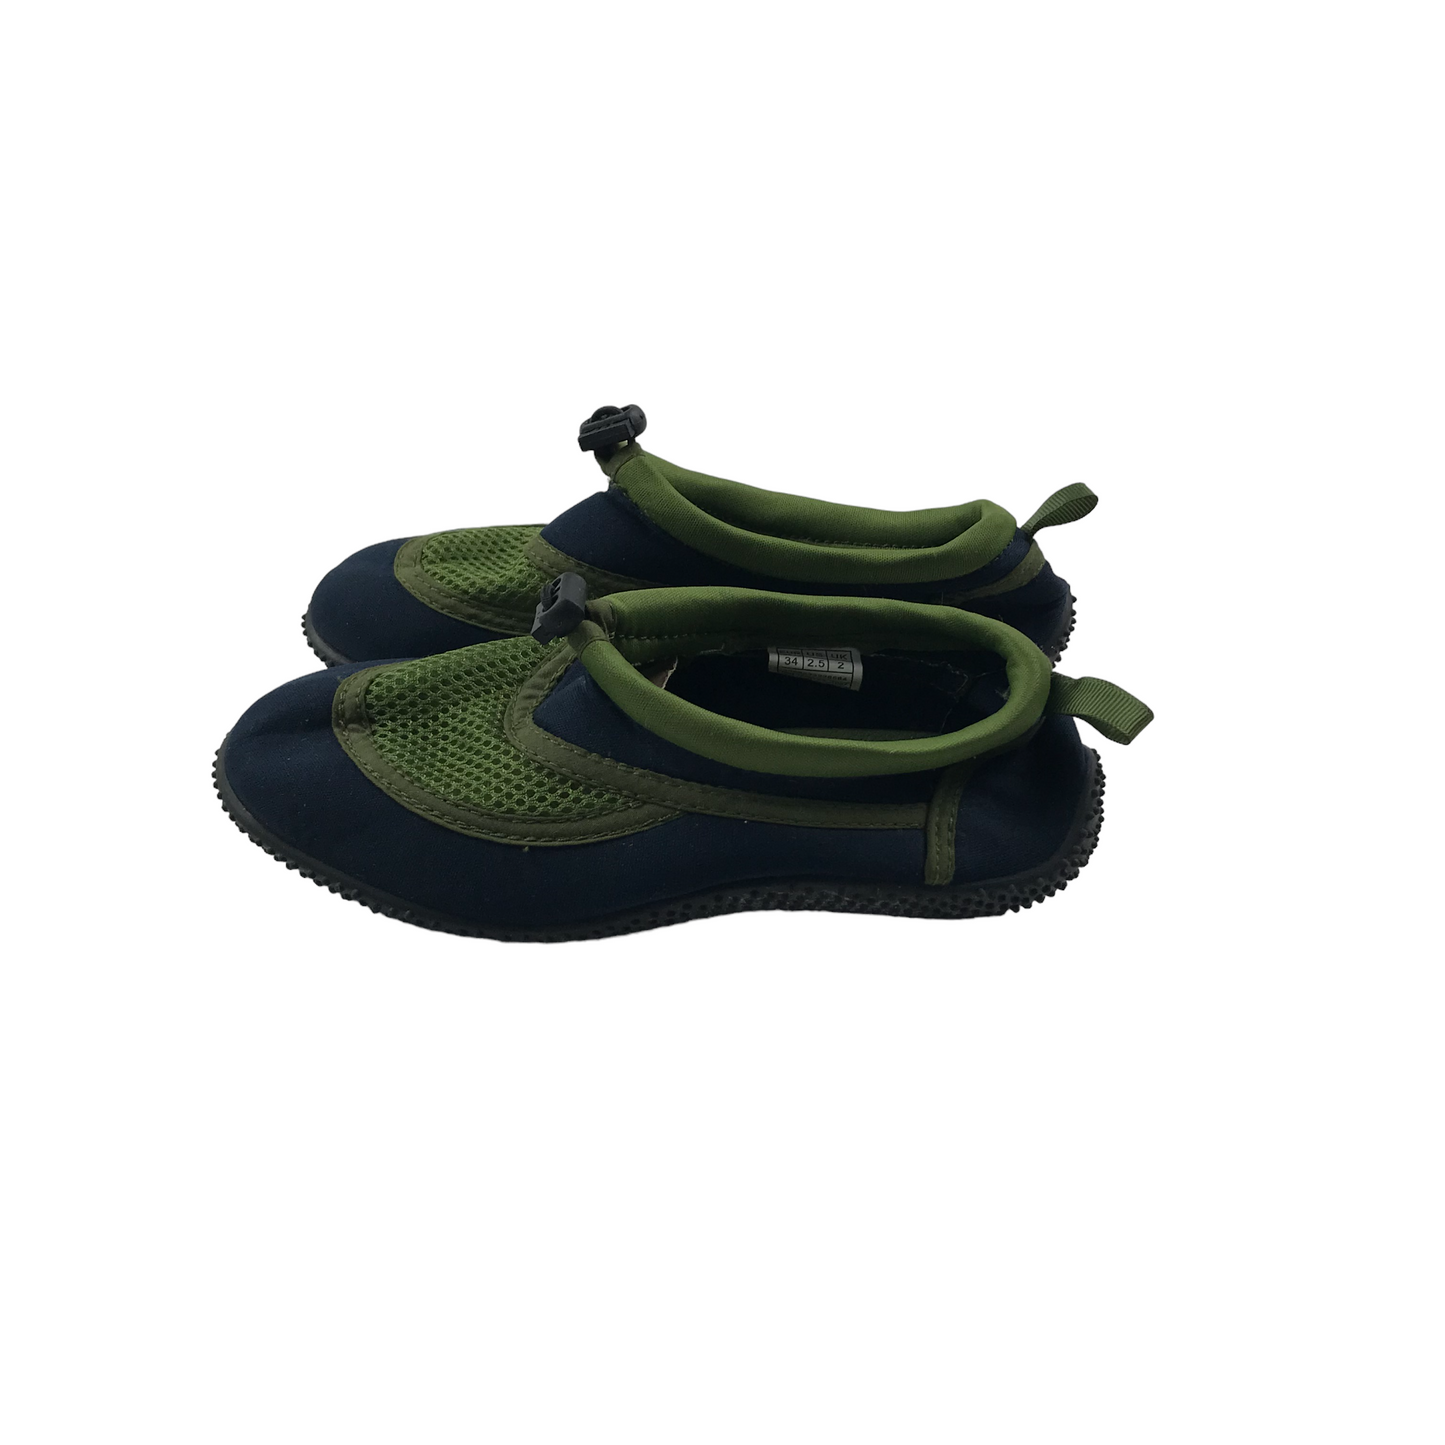 Pepperts Green Aqua Shoes Size 2